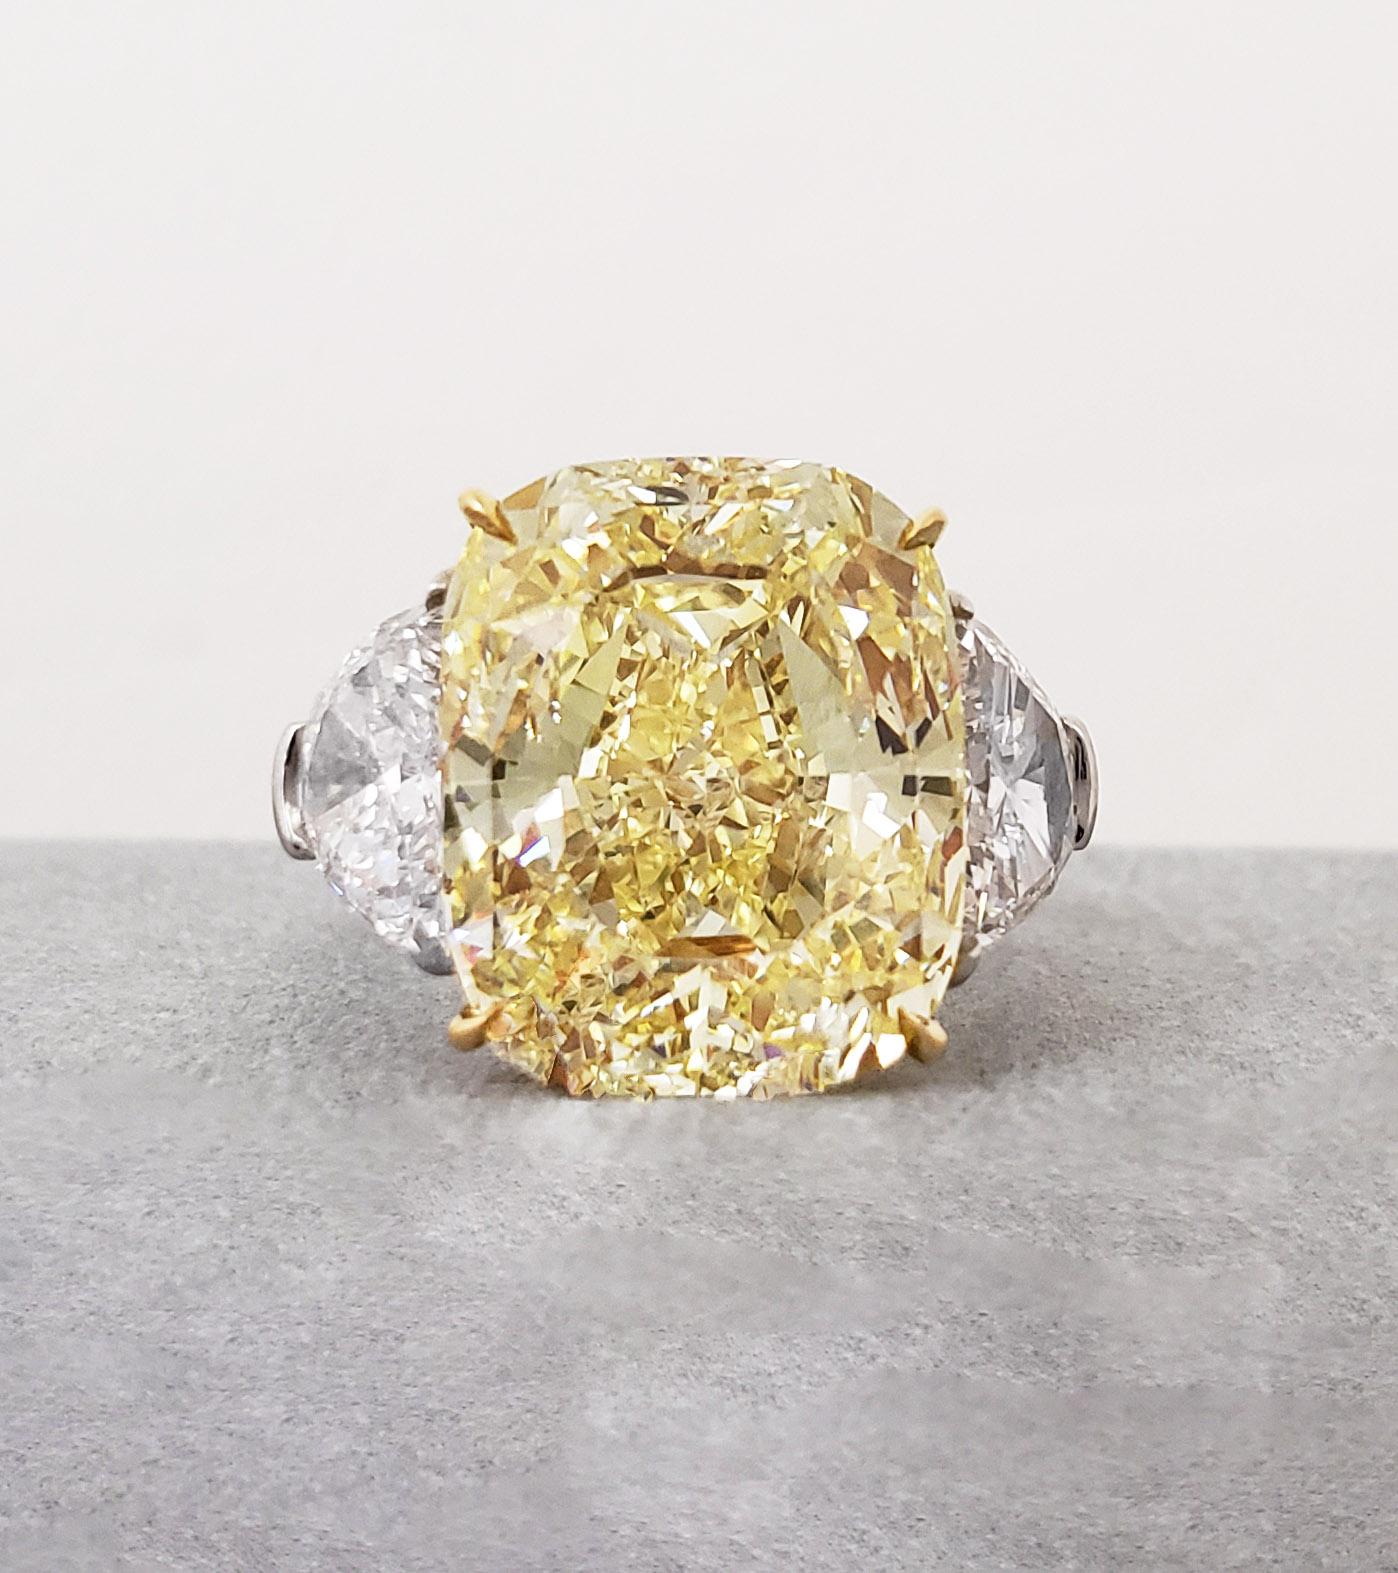 Von SCARSELLI, den weltberühmten Natural Fancy Color-Diamanten, ist dieser 11-karätige Fancy Yellow-Diamant im Kissenschliff in einem Ring aus 18 Karat Gelbgold und Platin gefasst, flankiert von Halbmonden E VS1-Diamanten von insgesamt 1,46 ct.